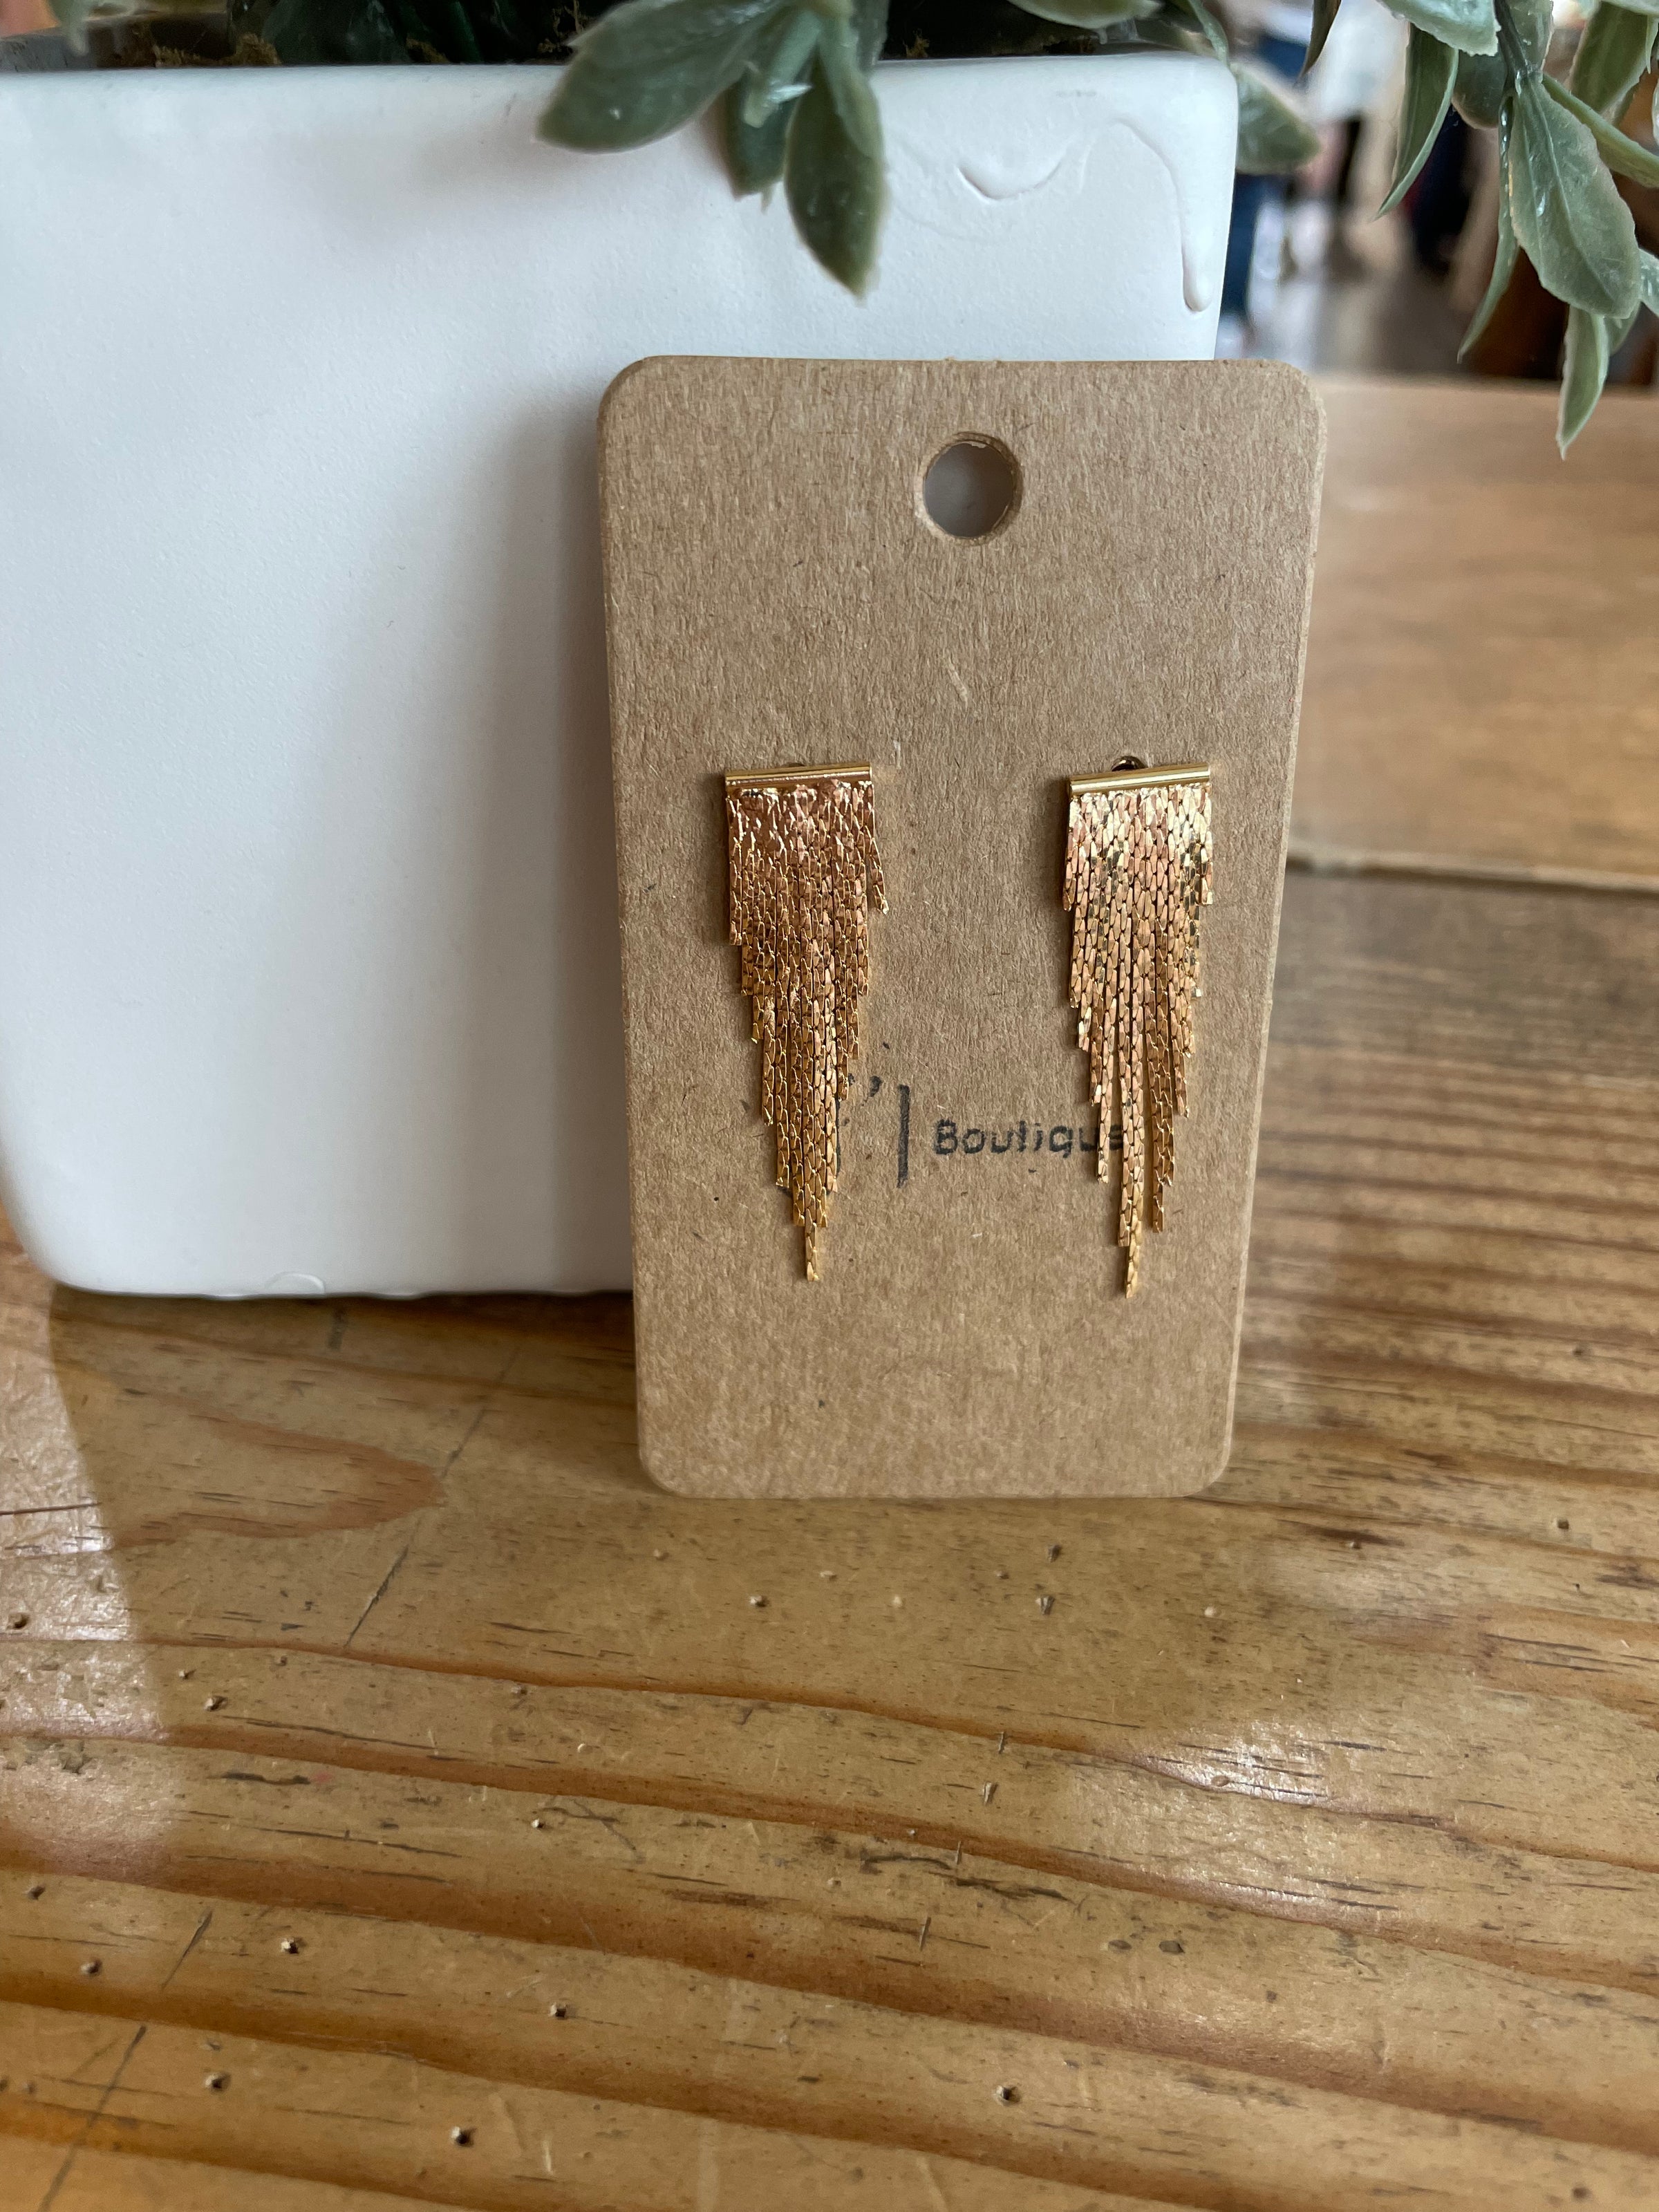 Metal Tassel Drop Earrings